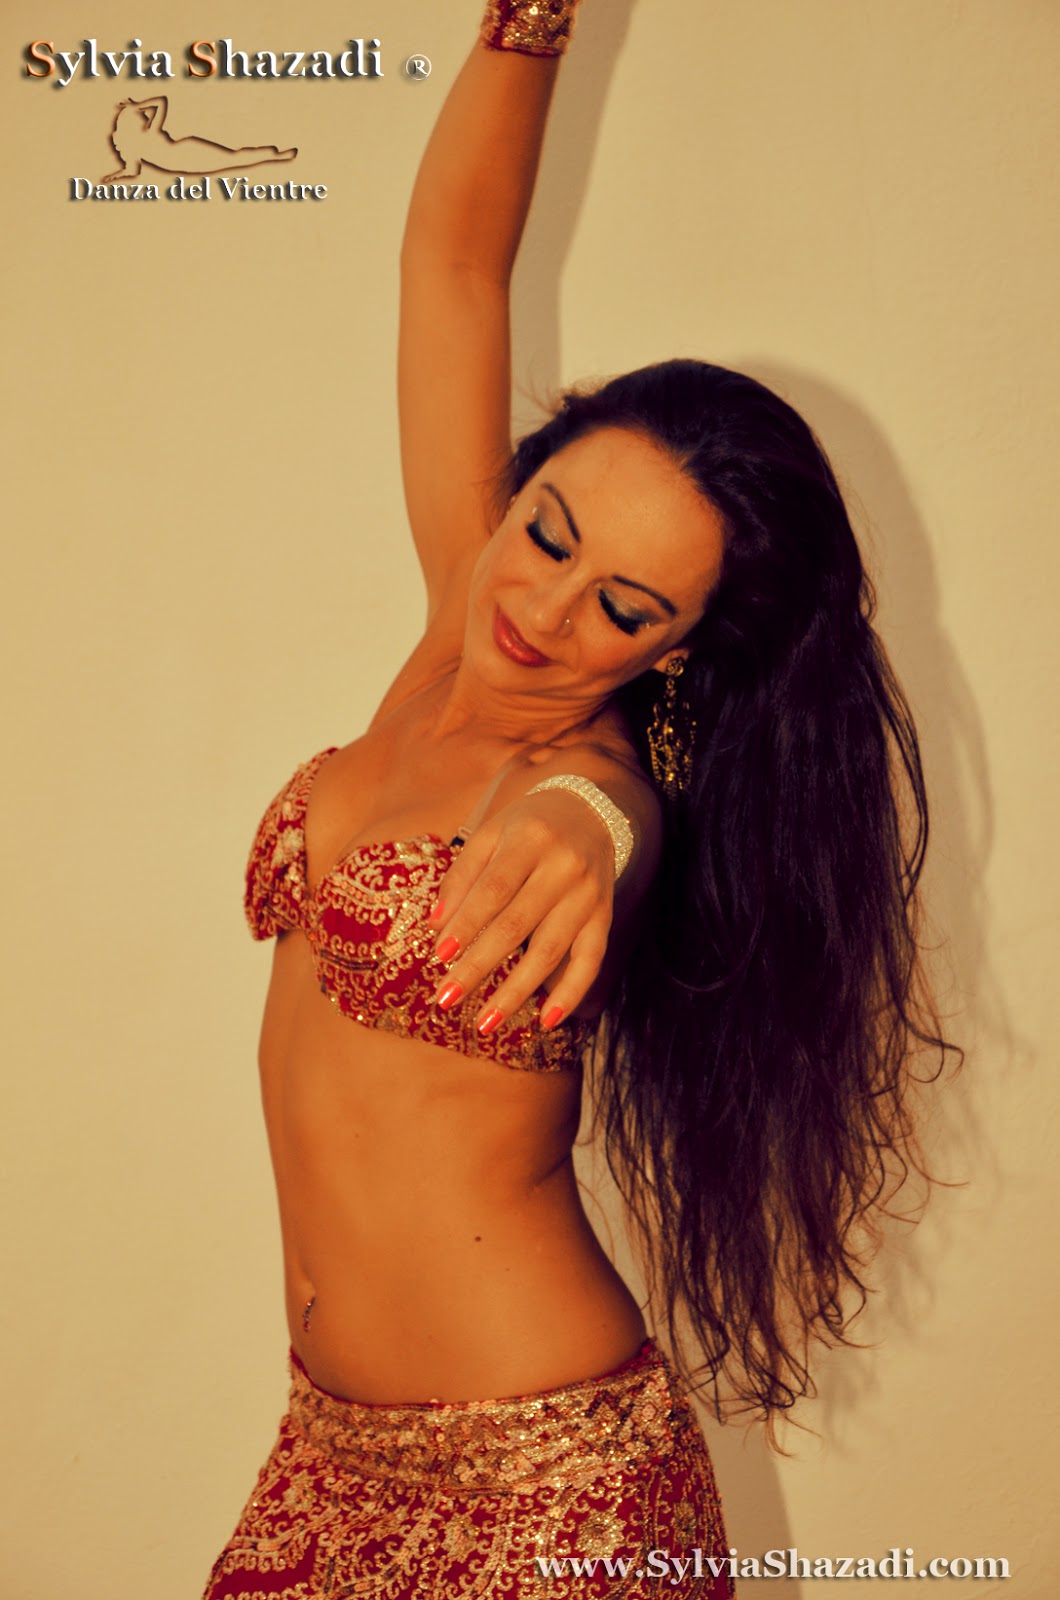 Sylvia Shazadi - Danza del vientre 